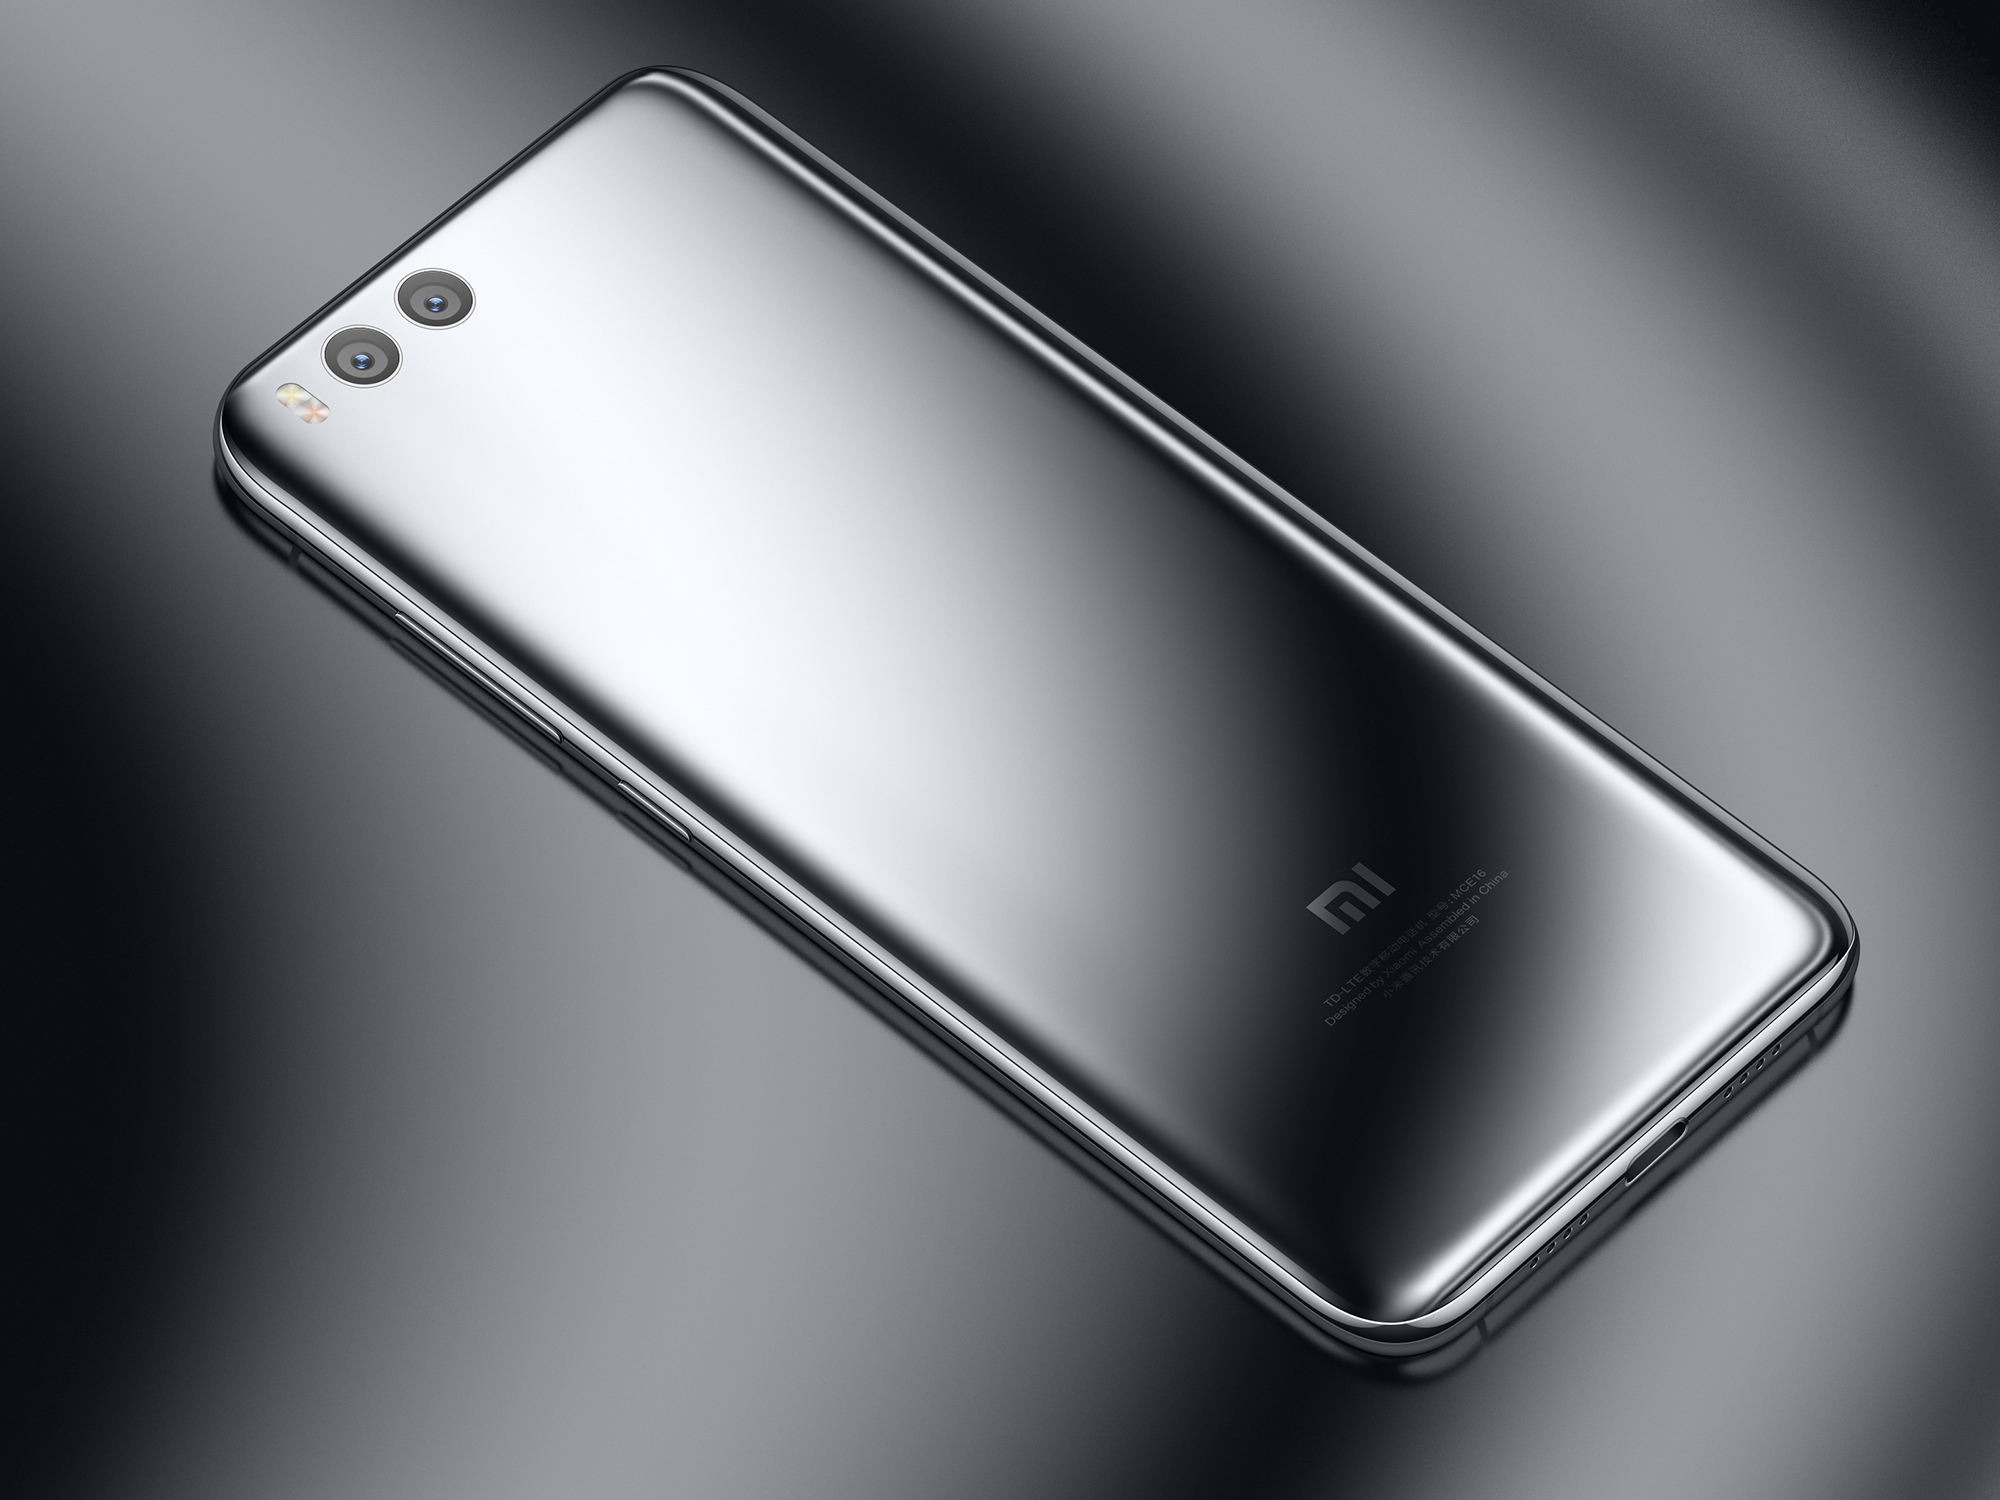 Владельцы смартфонов Xiaomi Mi 6 сообщают о проблеме с самопроизвольной перезагрузкой устройств